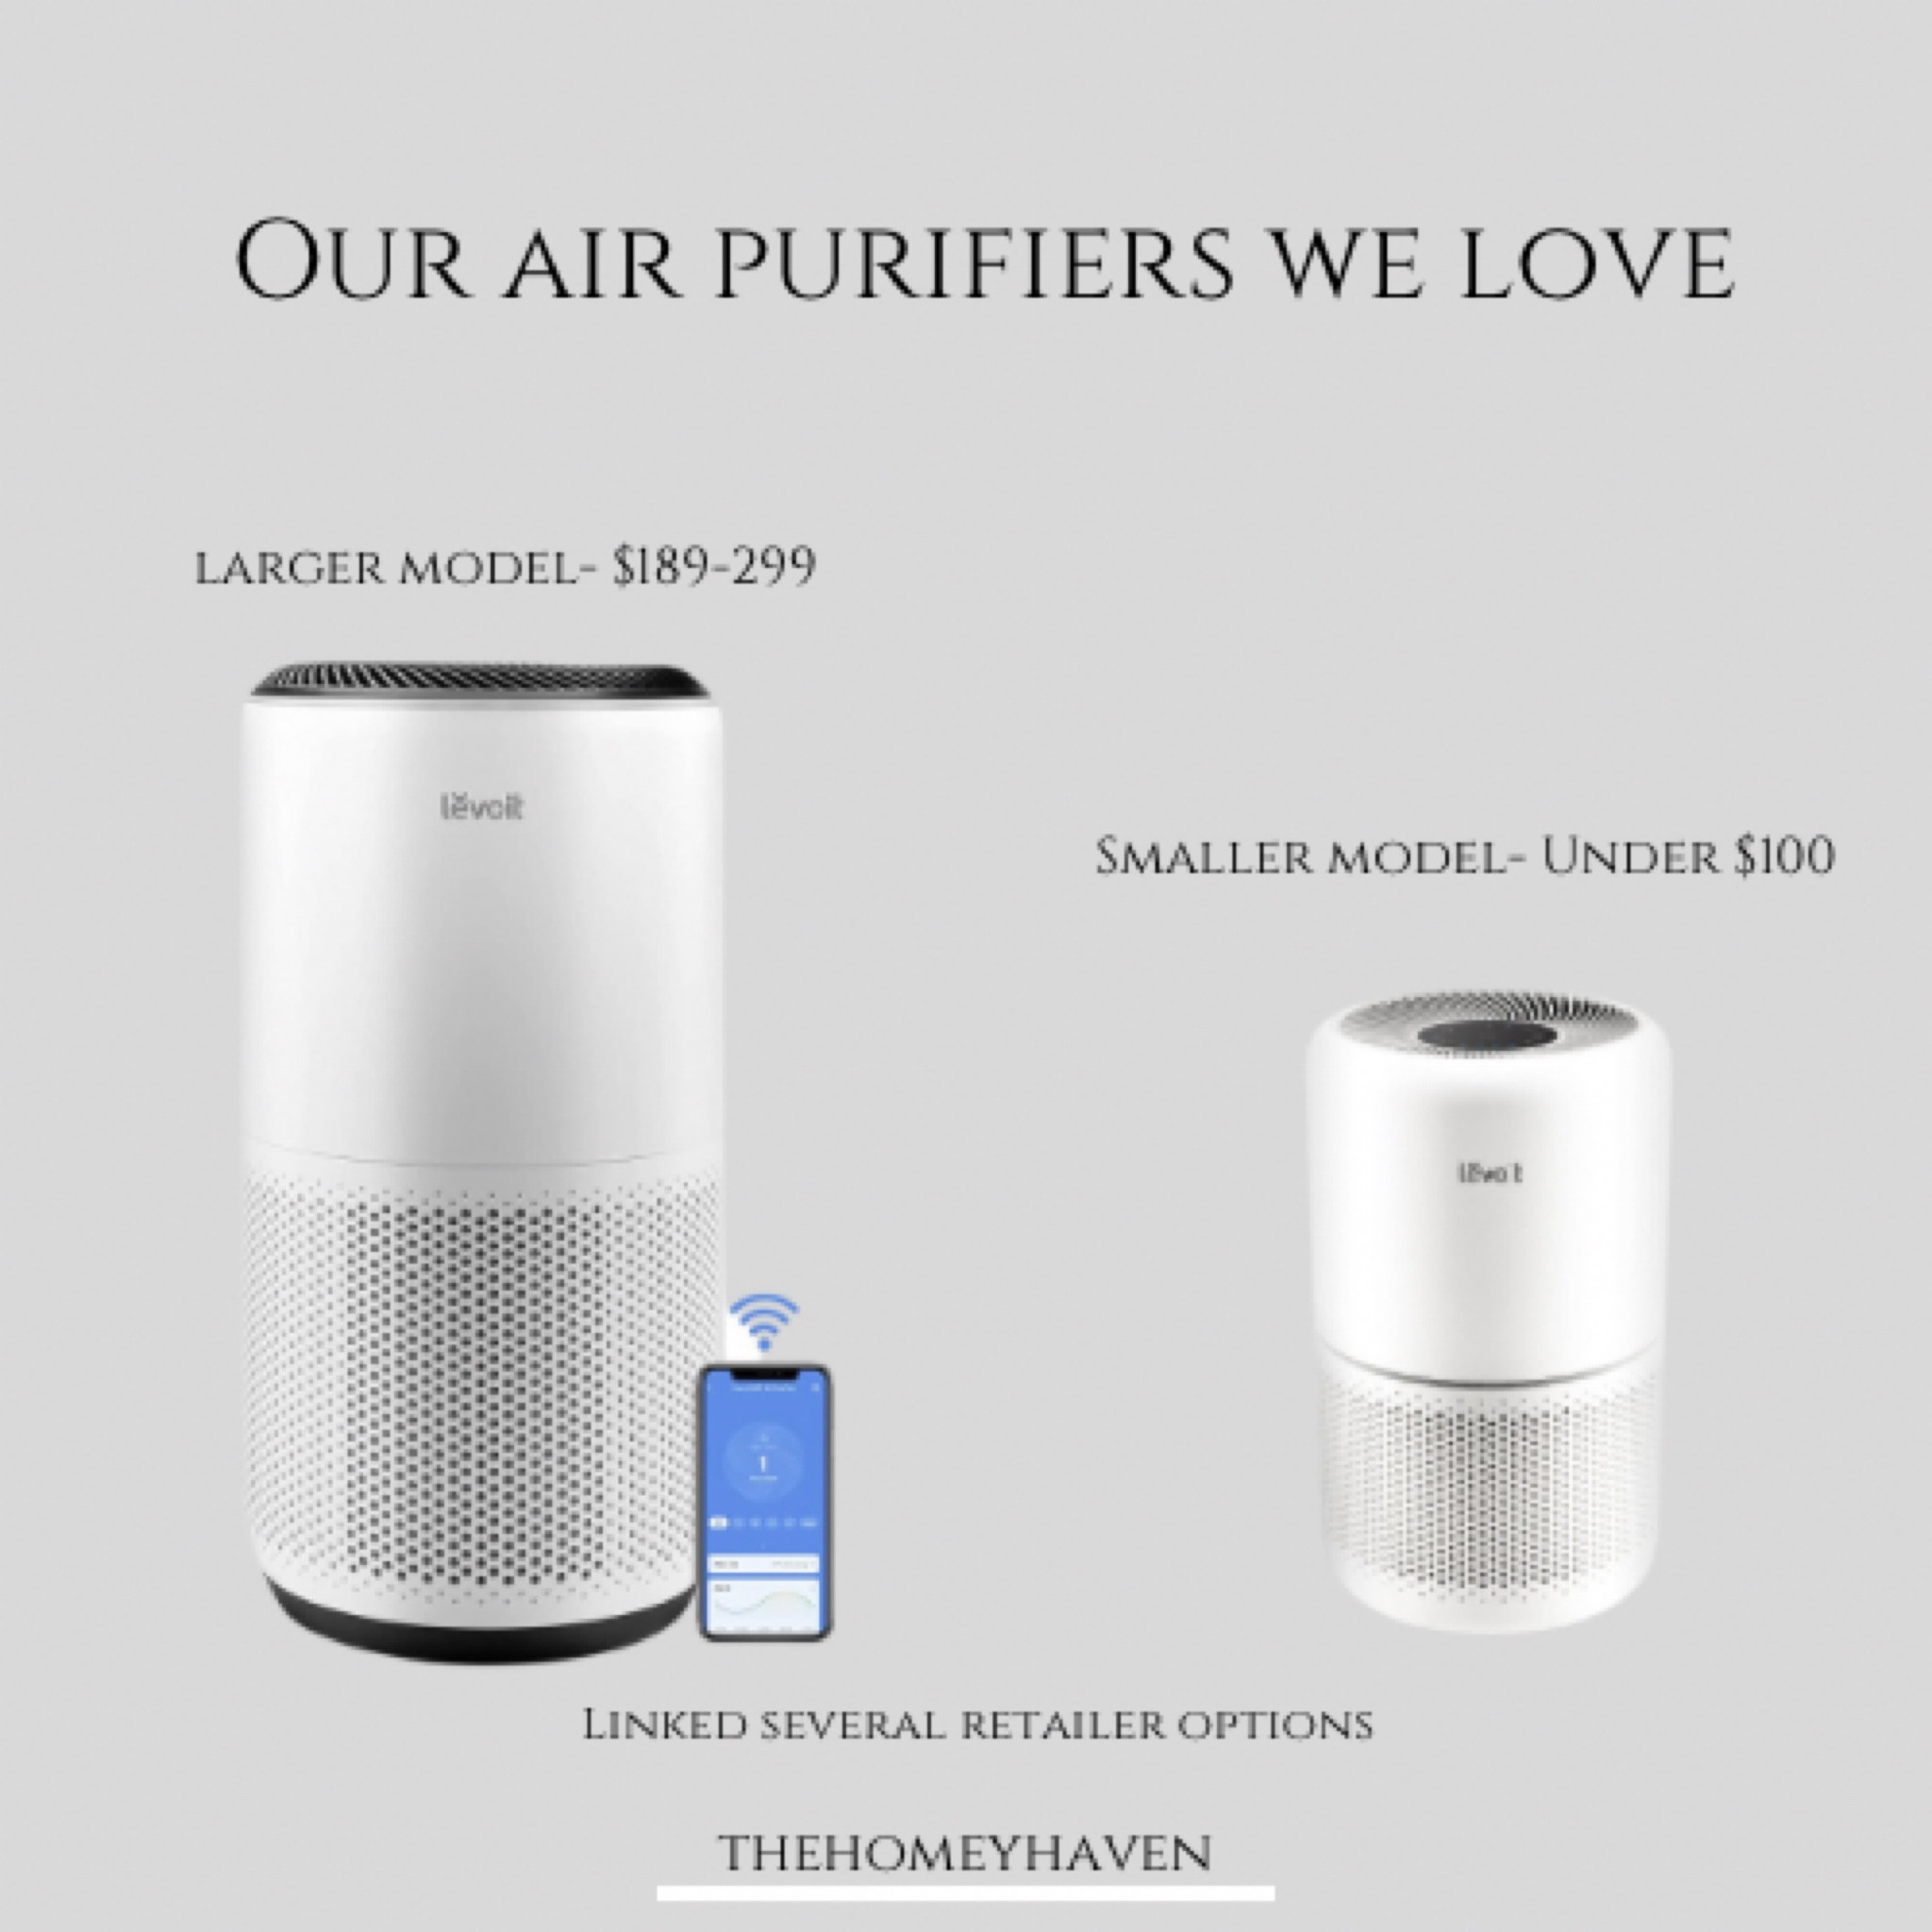 Levoit True Hepa Air Purifier : Target